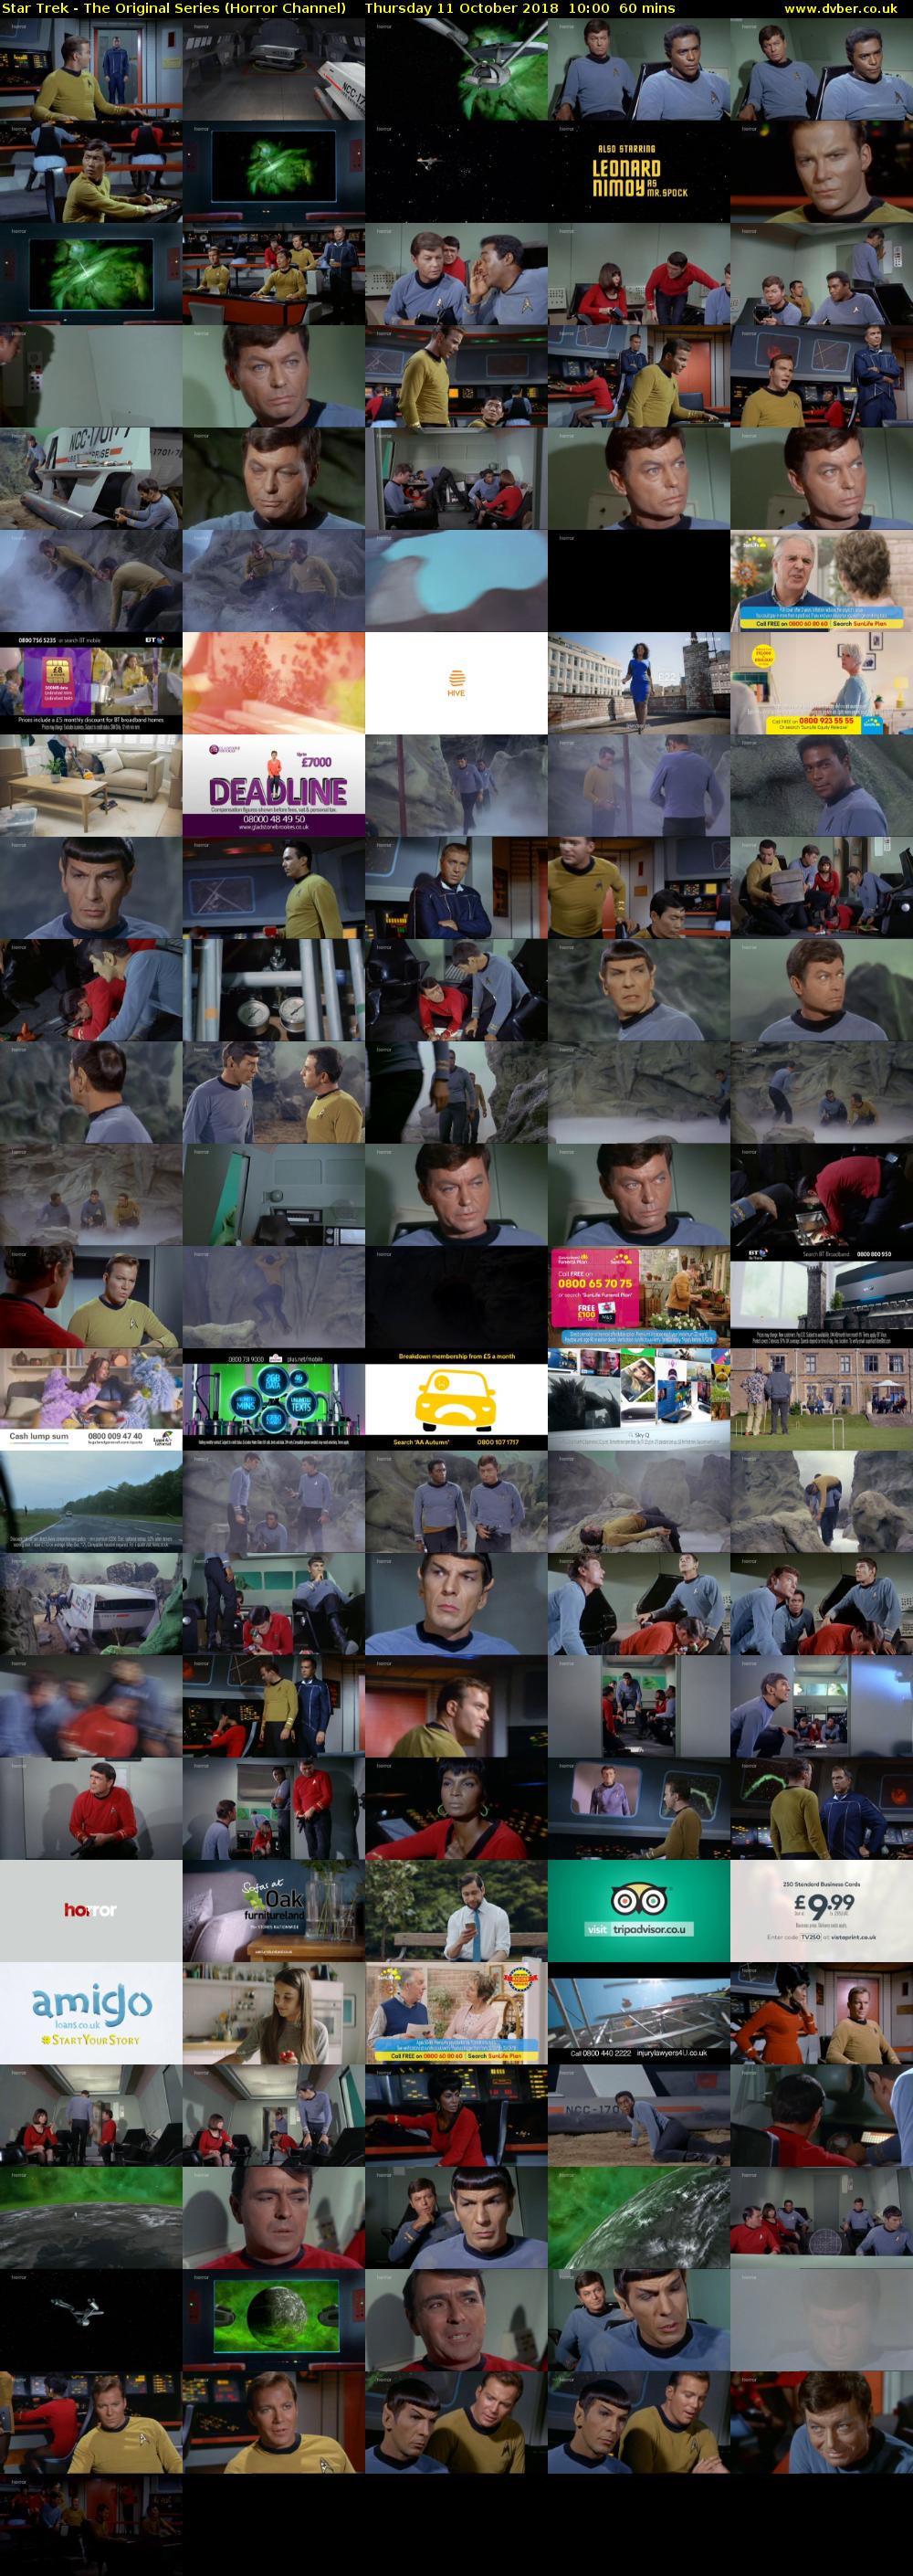 Star Trek - The Original Series (Horror Channel) Thursday 11 October 2018 10:00 - 11:00